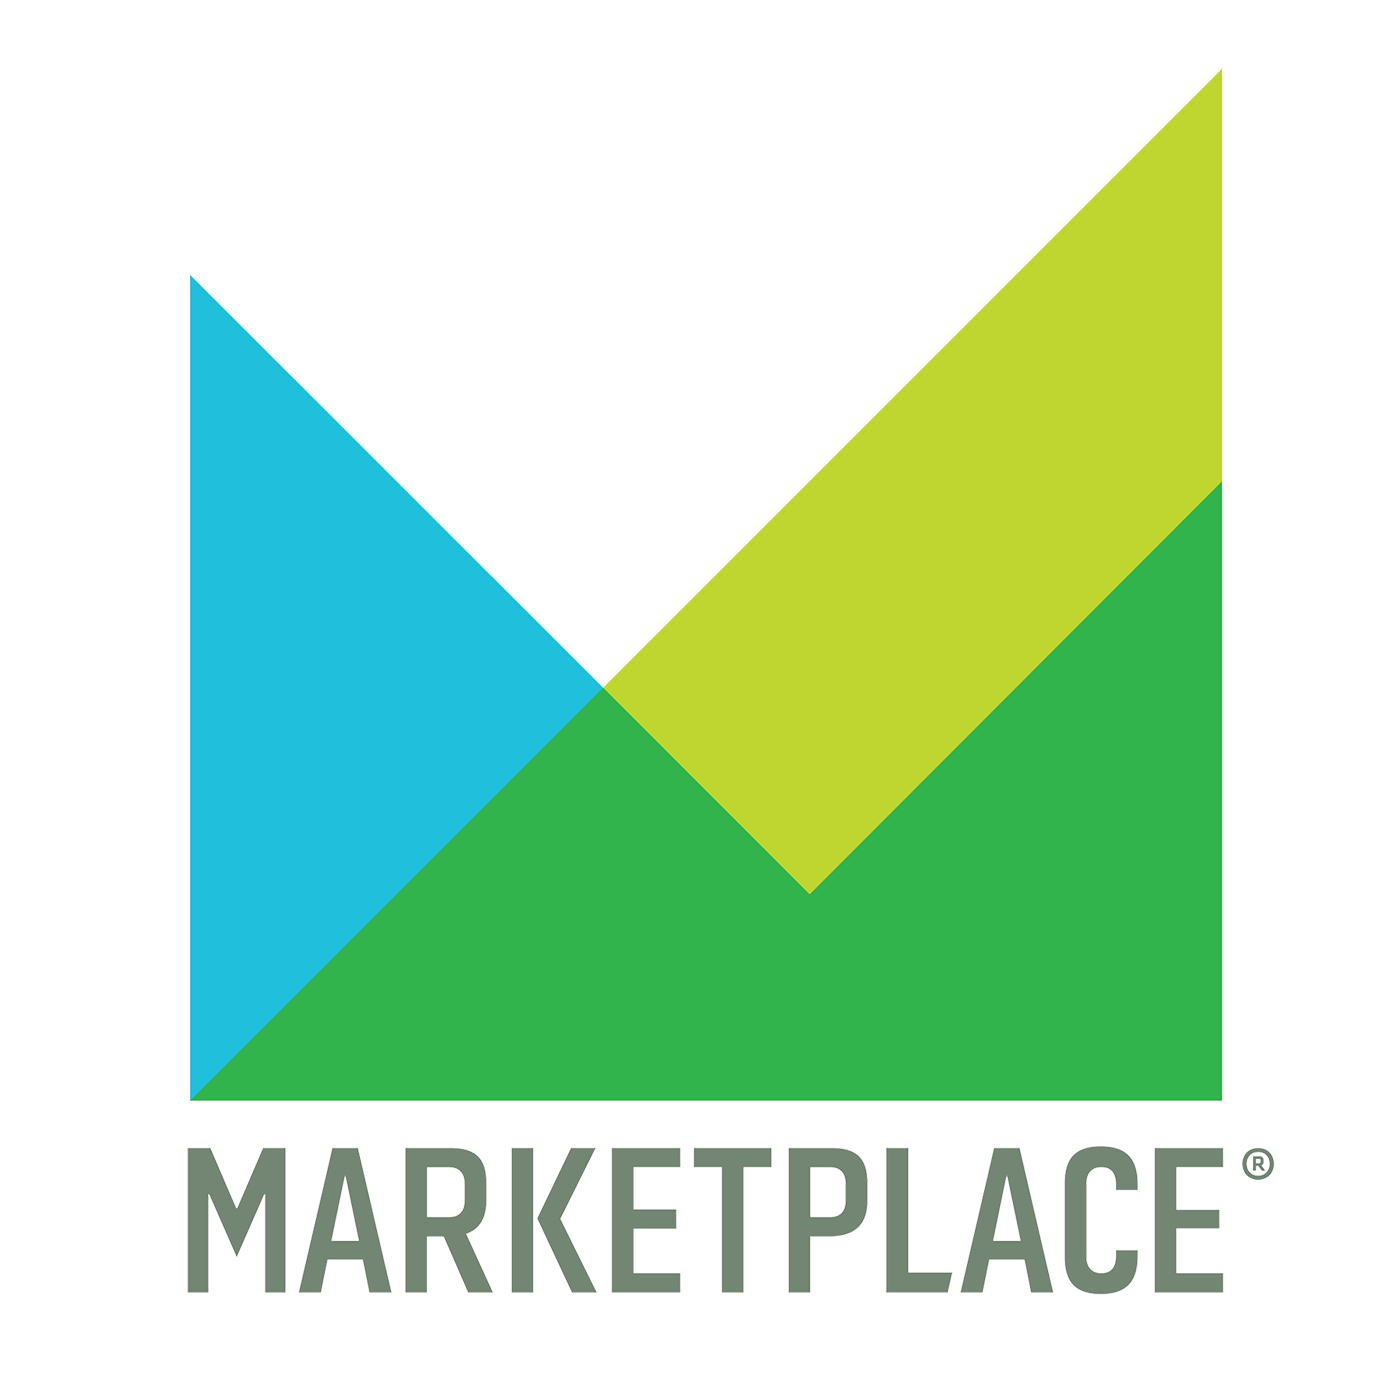 Marketplace podcast show image